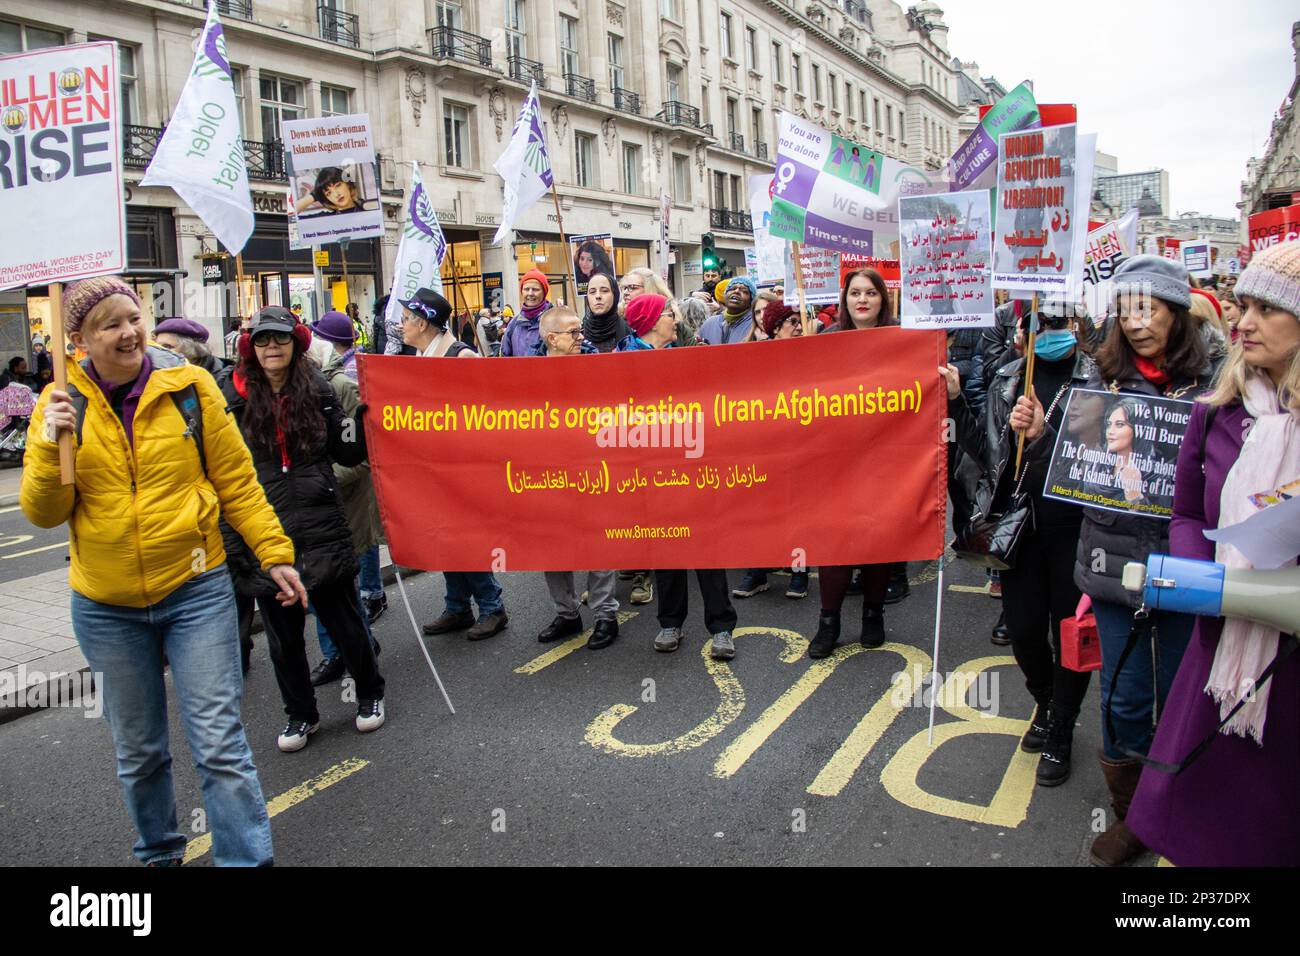 Londres, Reino Unido - 4 de marzo de 2023: Miles de mujeres, incluidas mujeres iraníes y afganas que llevaban consignas de 'libertad de vida de las mujeres', marcharon en el centro de Londres hacia Trafalgar Square para protestar contra la violencia masculina y por la igualdad de género. La marcha y el mitin formaron parte del evento anual Million Women Rise celebrado para conmemorar el Día Internacional de la Mujer. Crédito: Sinai Noor / Alamy Live News Foto de stock